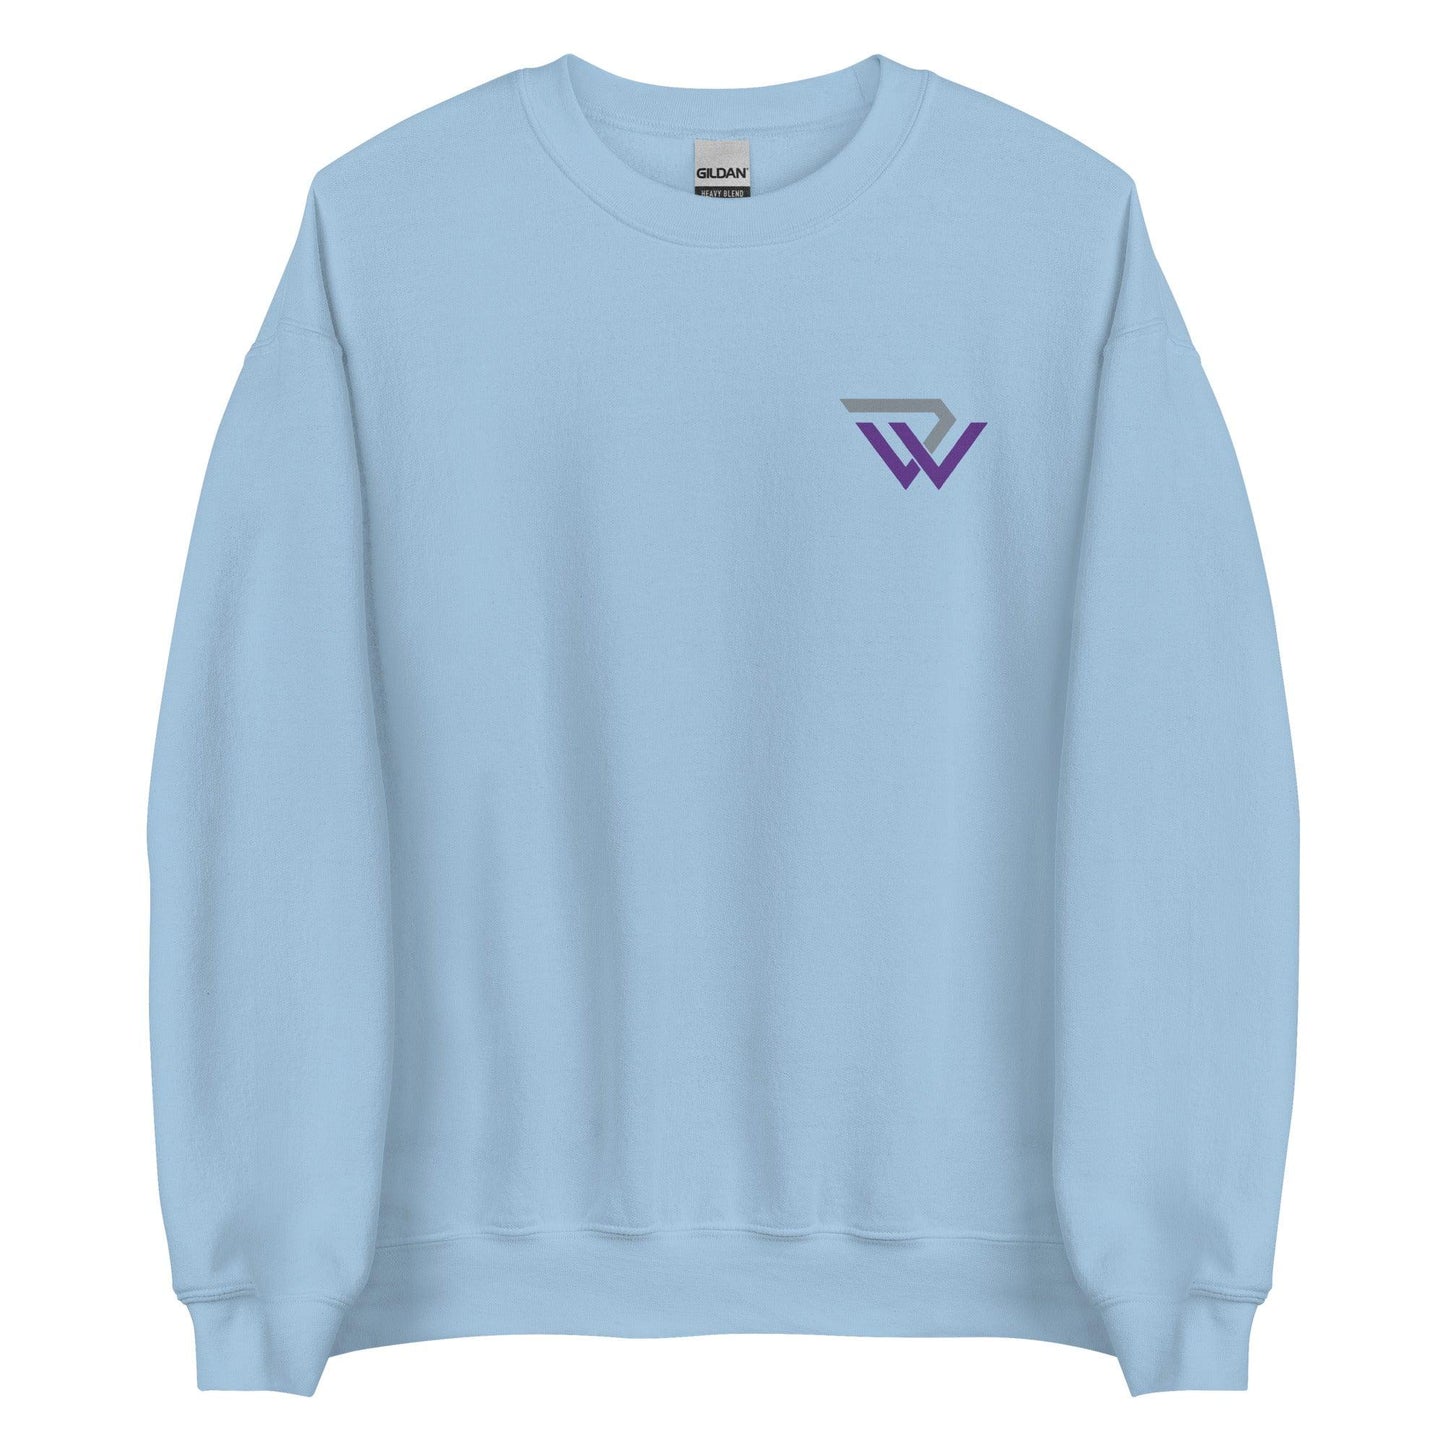 David Walker "Essential" Sweatshirt - Fan Arch